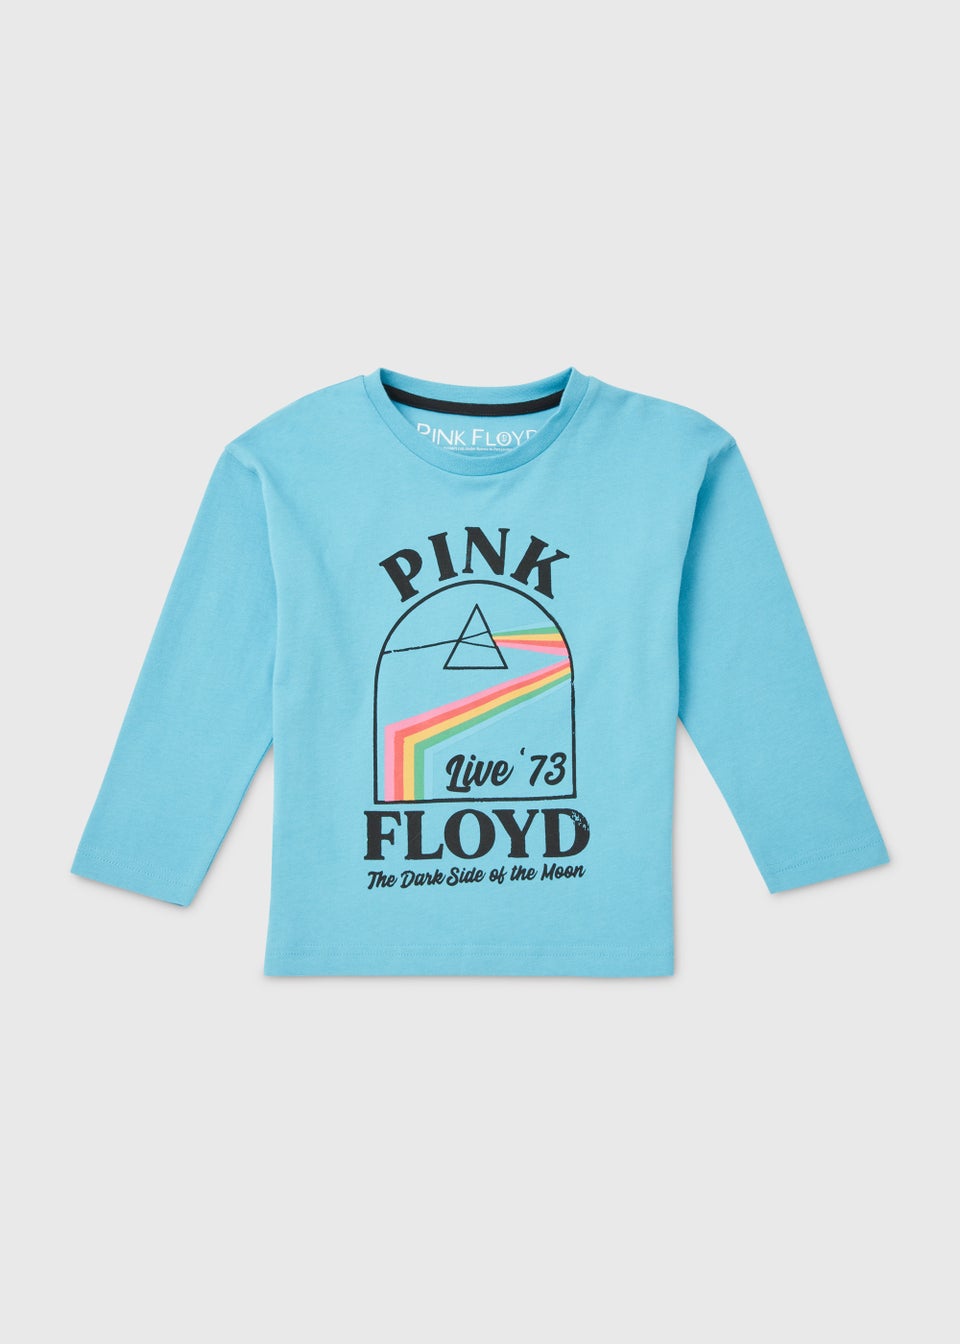 Детская синяя футболка Pink Floyd (9 мес.–6 лет), голубой